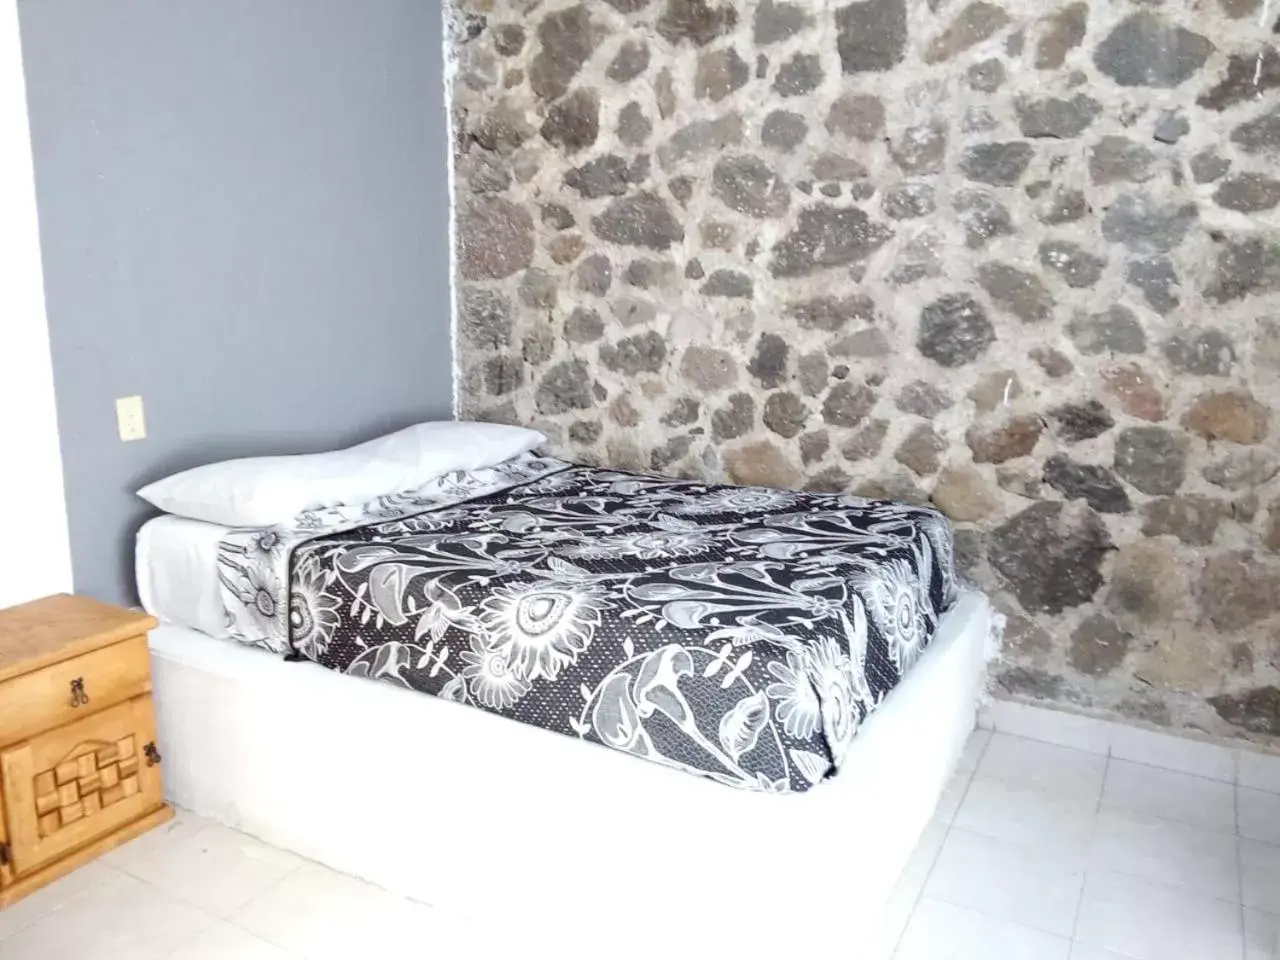 Bed in Hotel Juarez